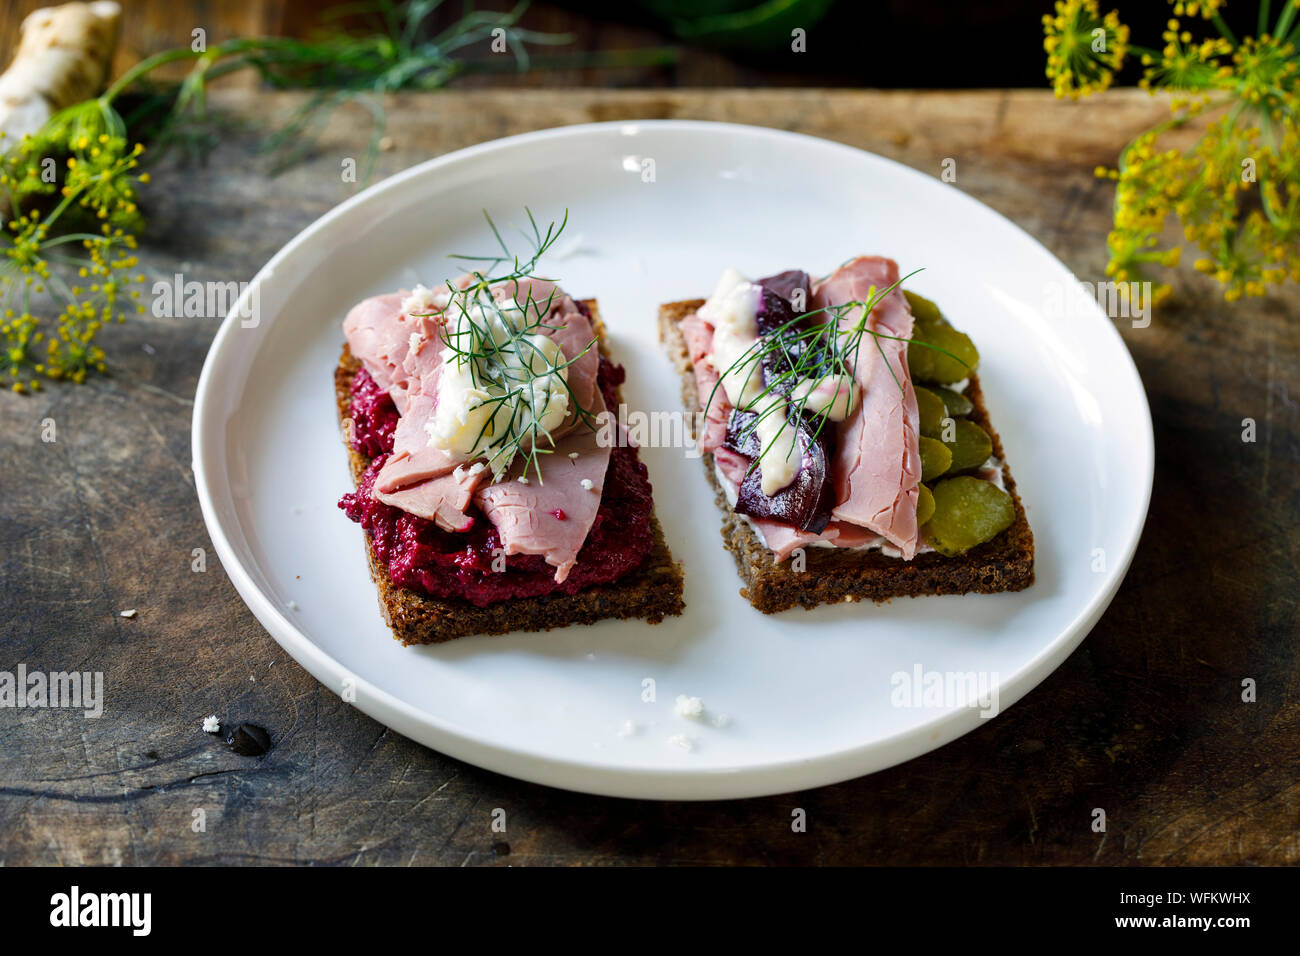 Les sandwiches ouverts scandinaves au boeuf et betterave Banque D'Images